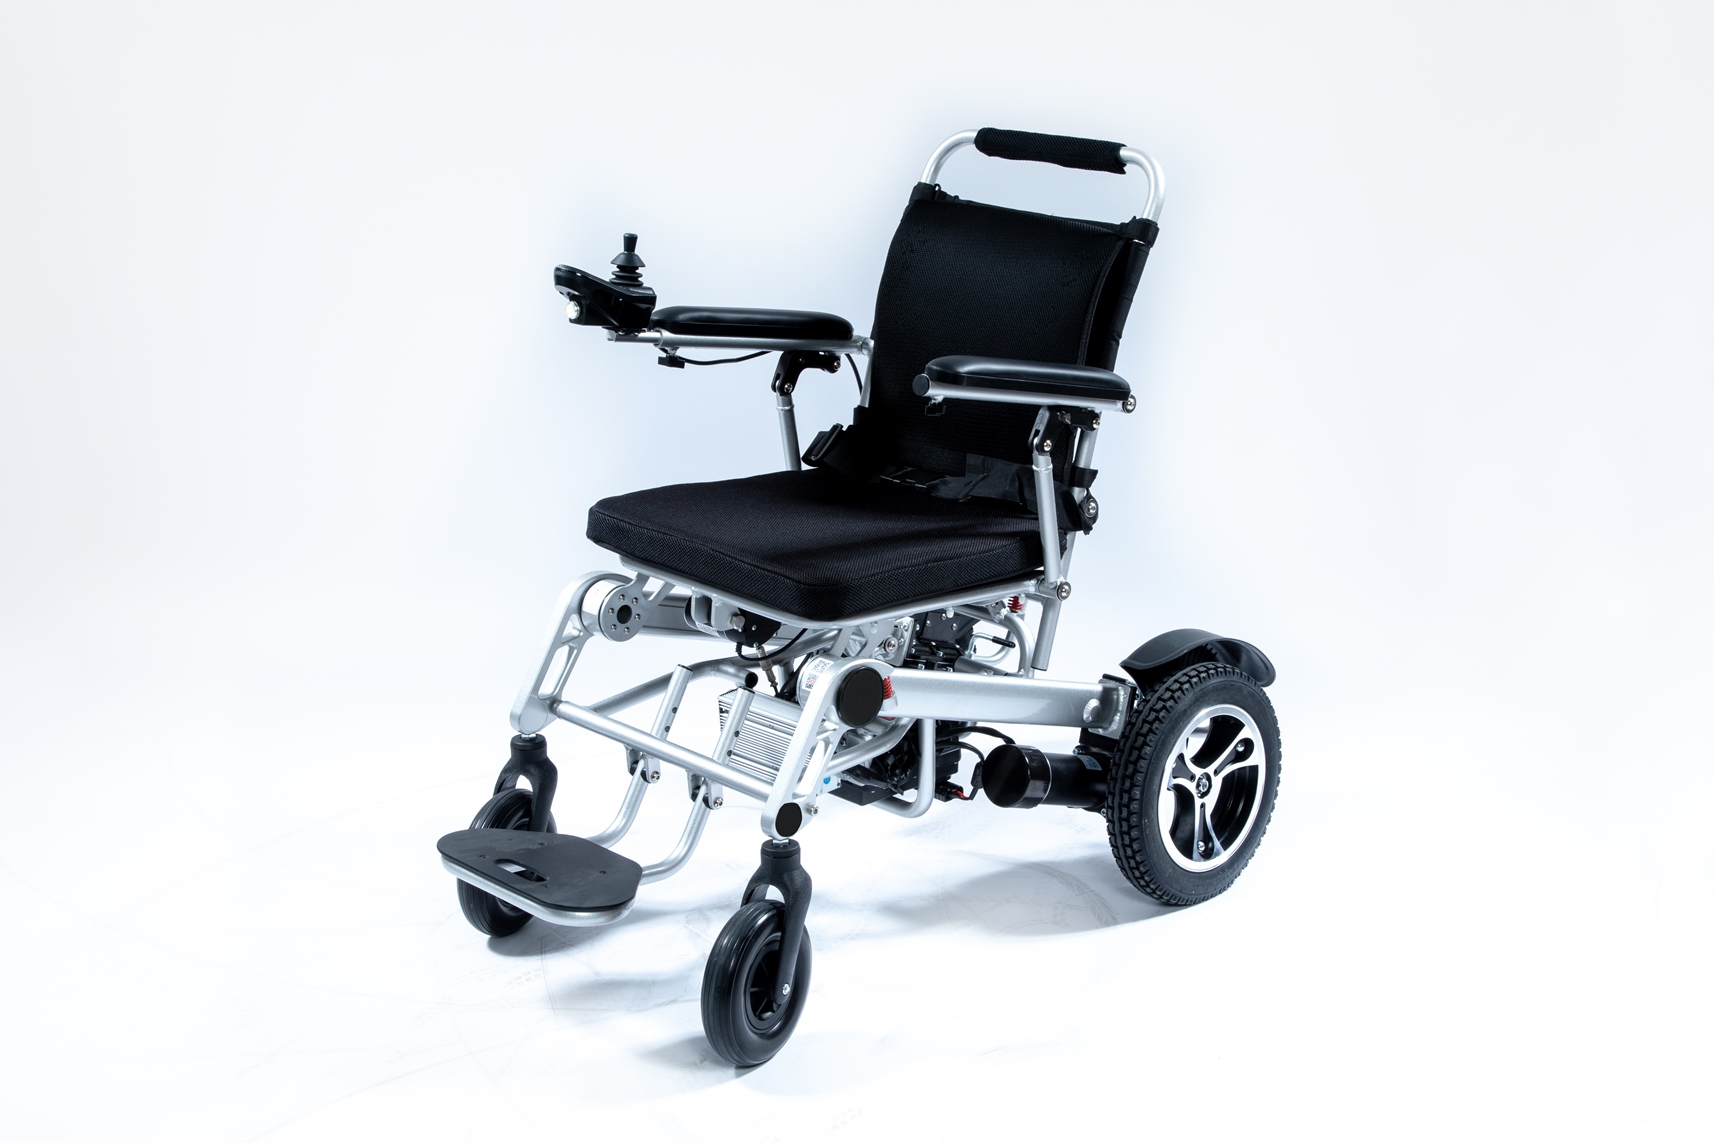 Х повер. Кресло-коляска с электроприводом мет Adventure 16831. Кресло-коляска Meyra Smart s 2.370. Инвалидная кресло-коляска c52 комфорт. Инвалидная кресло-коляска с электроприводом Optimus 2.